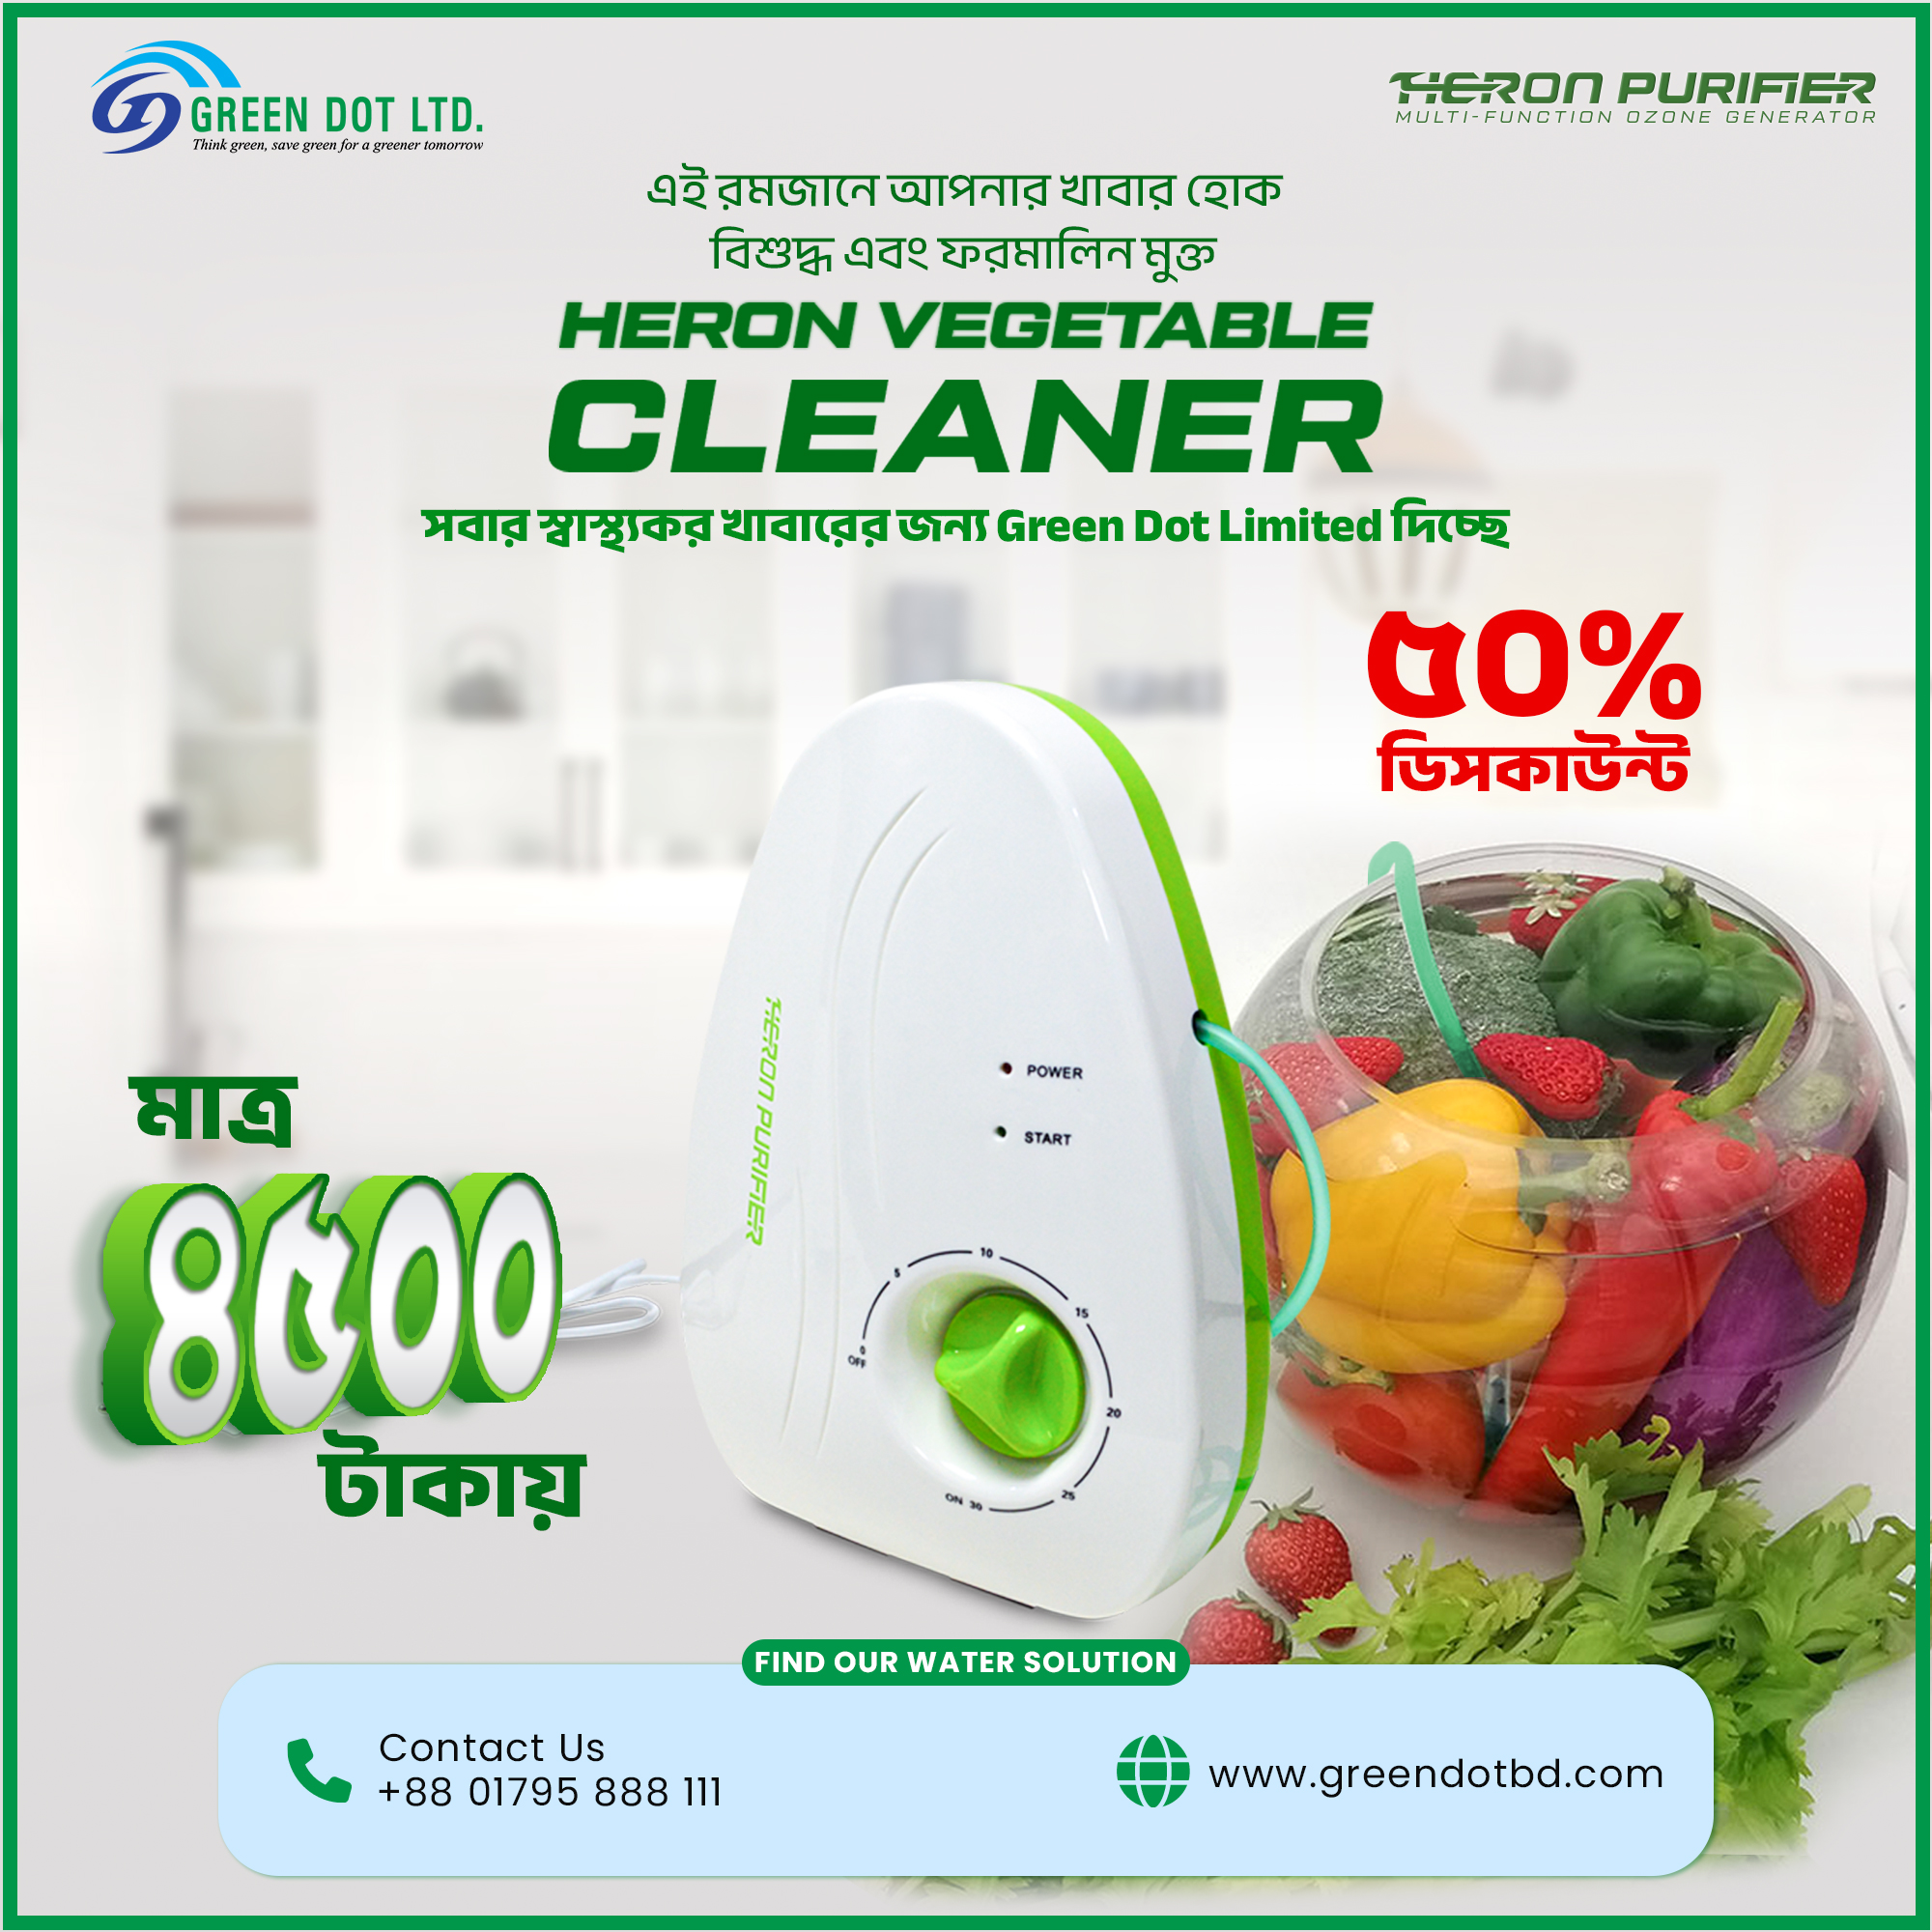 Vegetable Cleaner Offer-Heron-Green Dot Limited.jpg